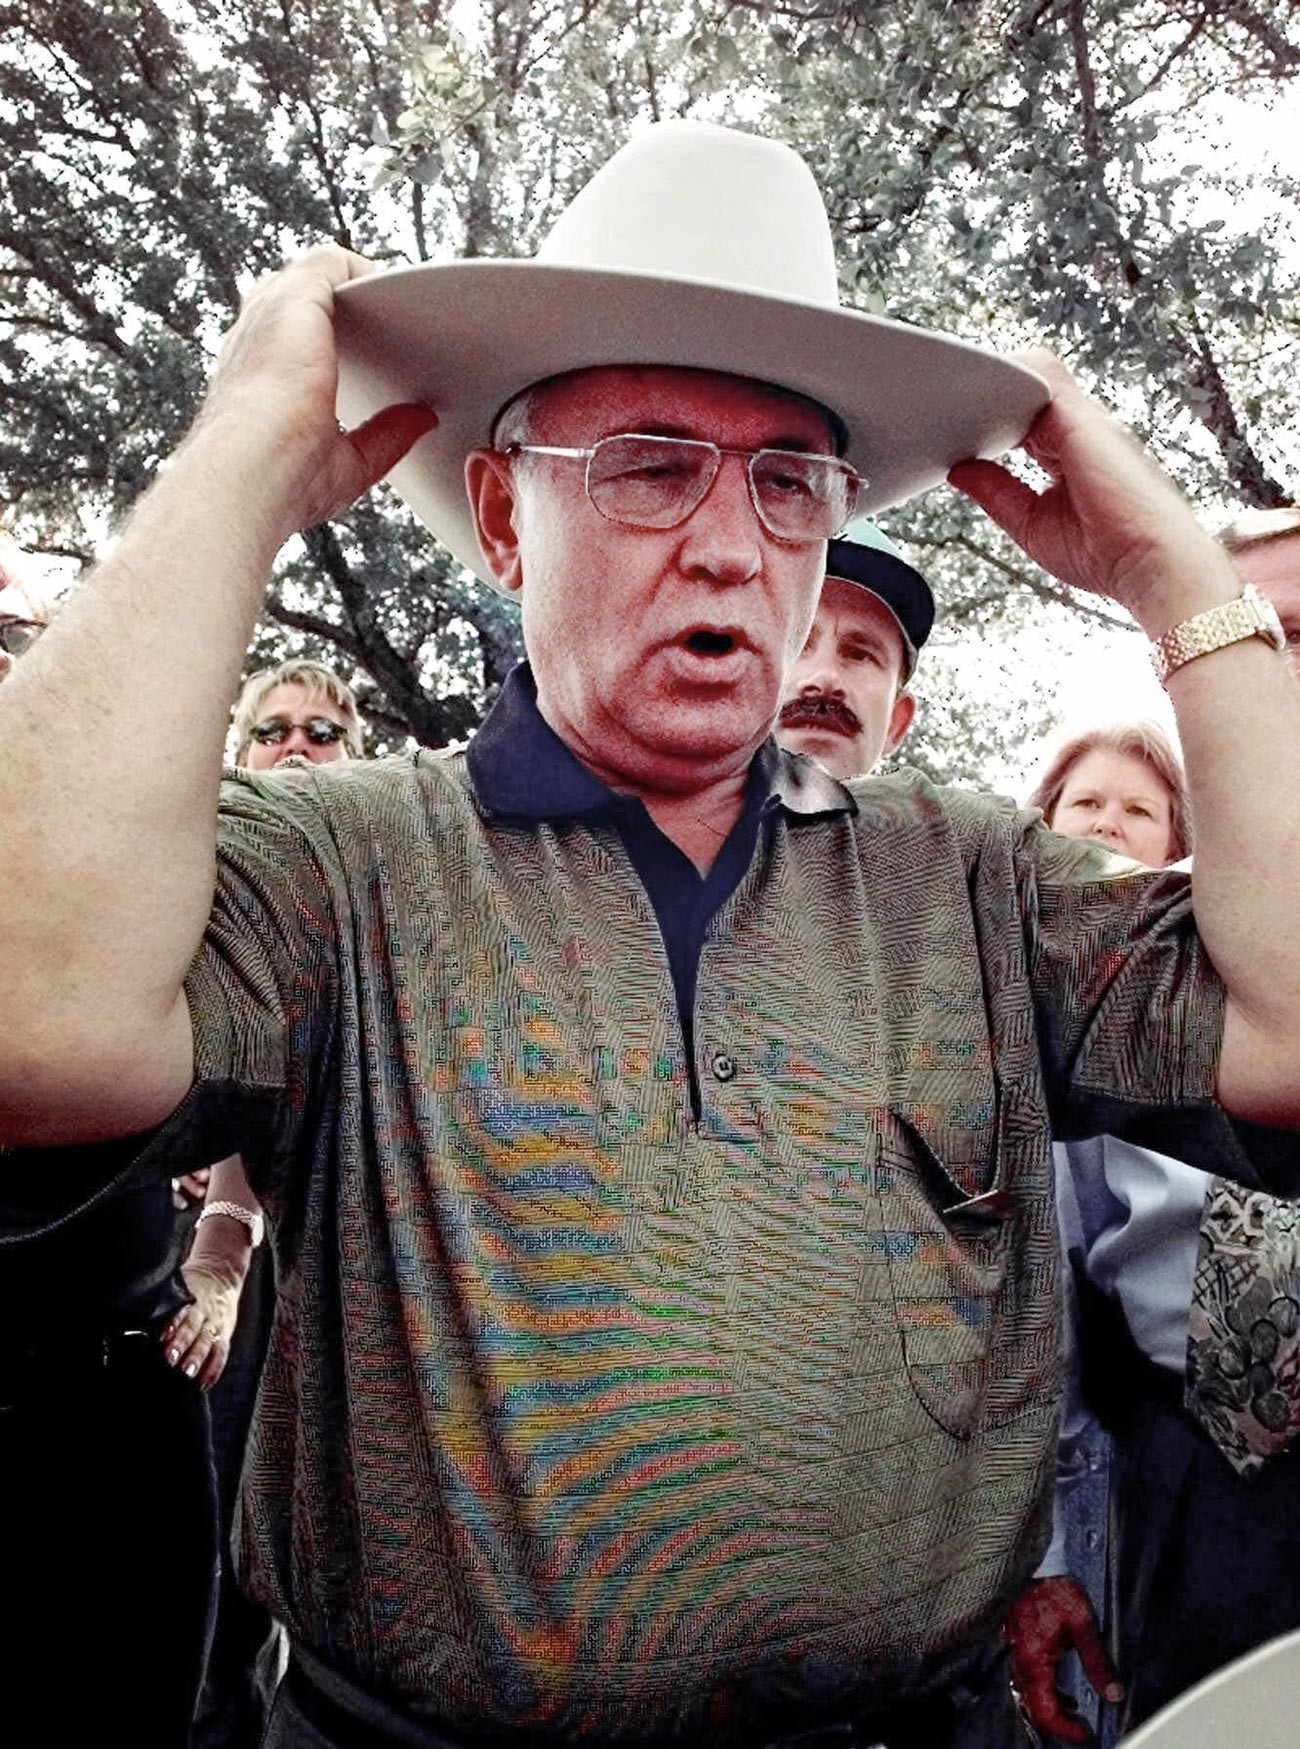 Бивши совјетски председник Михаил Горбачов ставља наопако каубојску капу на сајму током посете Даласу (Тексас). Уторак 13. октобар 1998. Горбачов је дошао у Далас да одржи предавање на Јужном методистичком универзитету и том приликом је добио шешир на поклон.